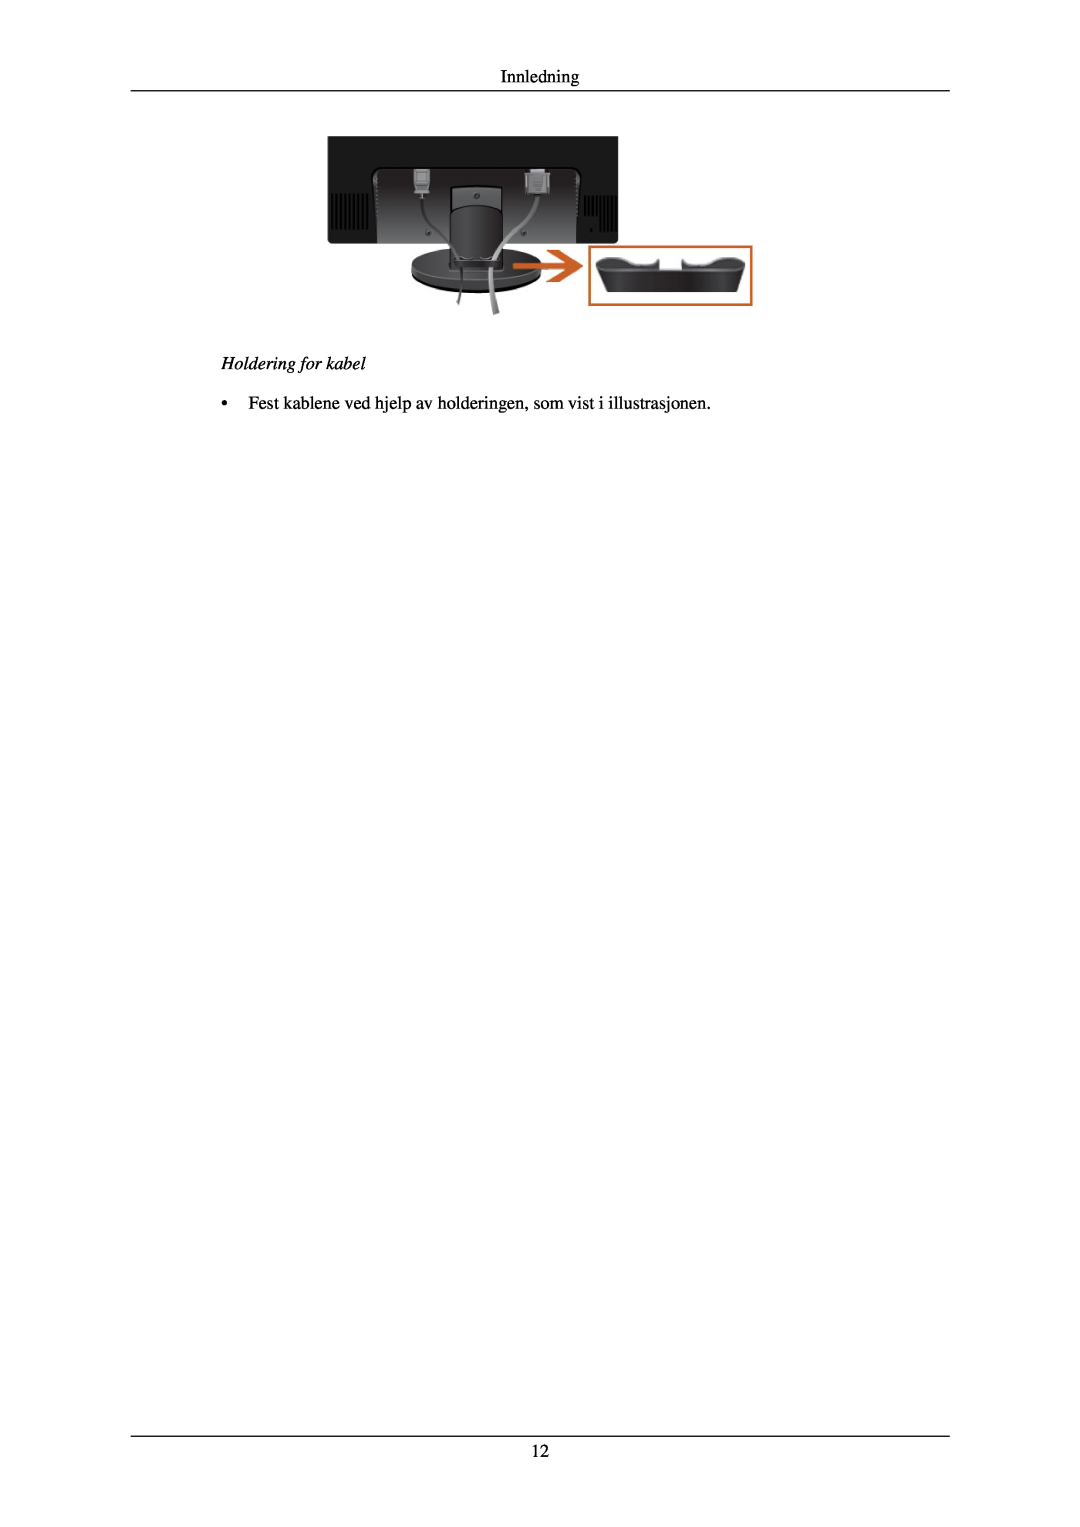 Samsung LS22MYNKBB/EDC Holdering for kabel, Innledning, Fest kablene ved hjelp av holderingen, som vist i illustrasjonen 